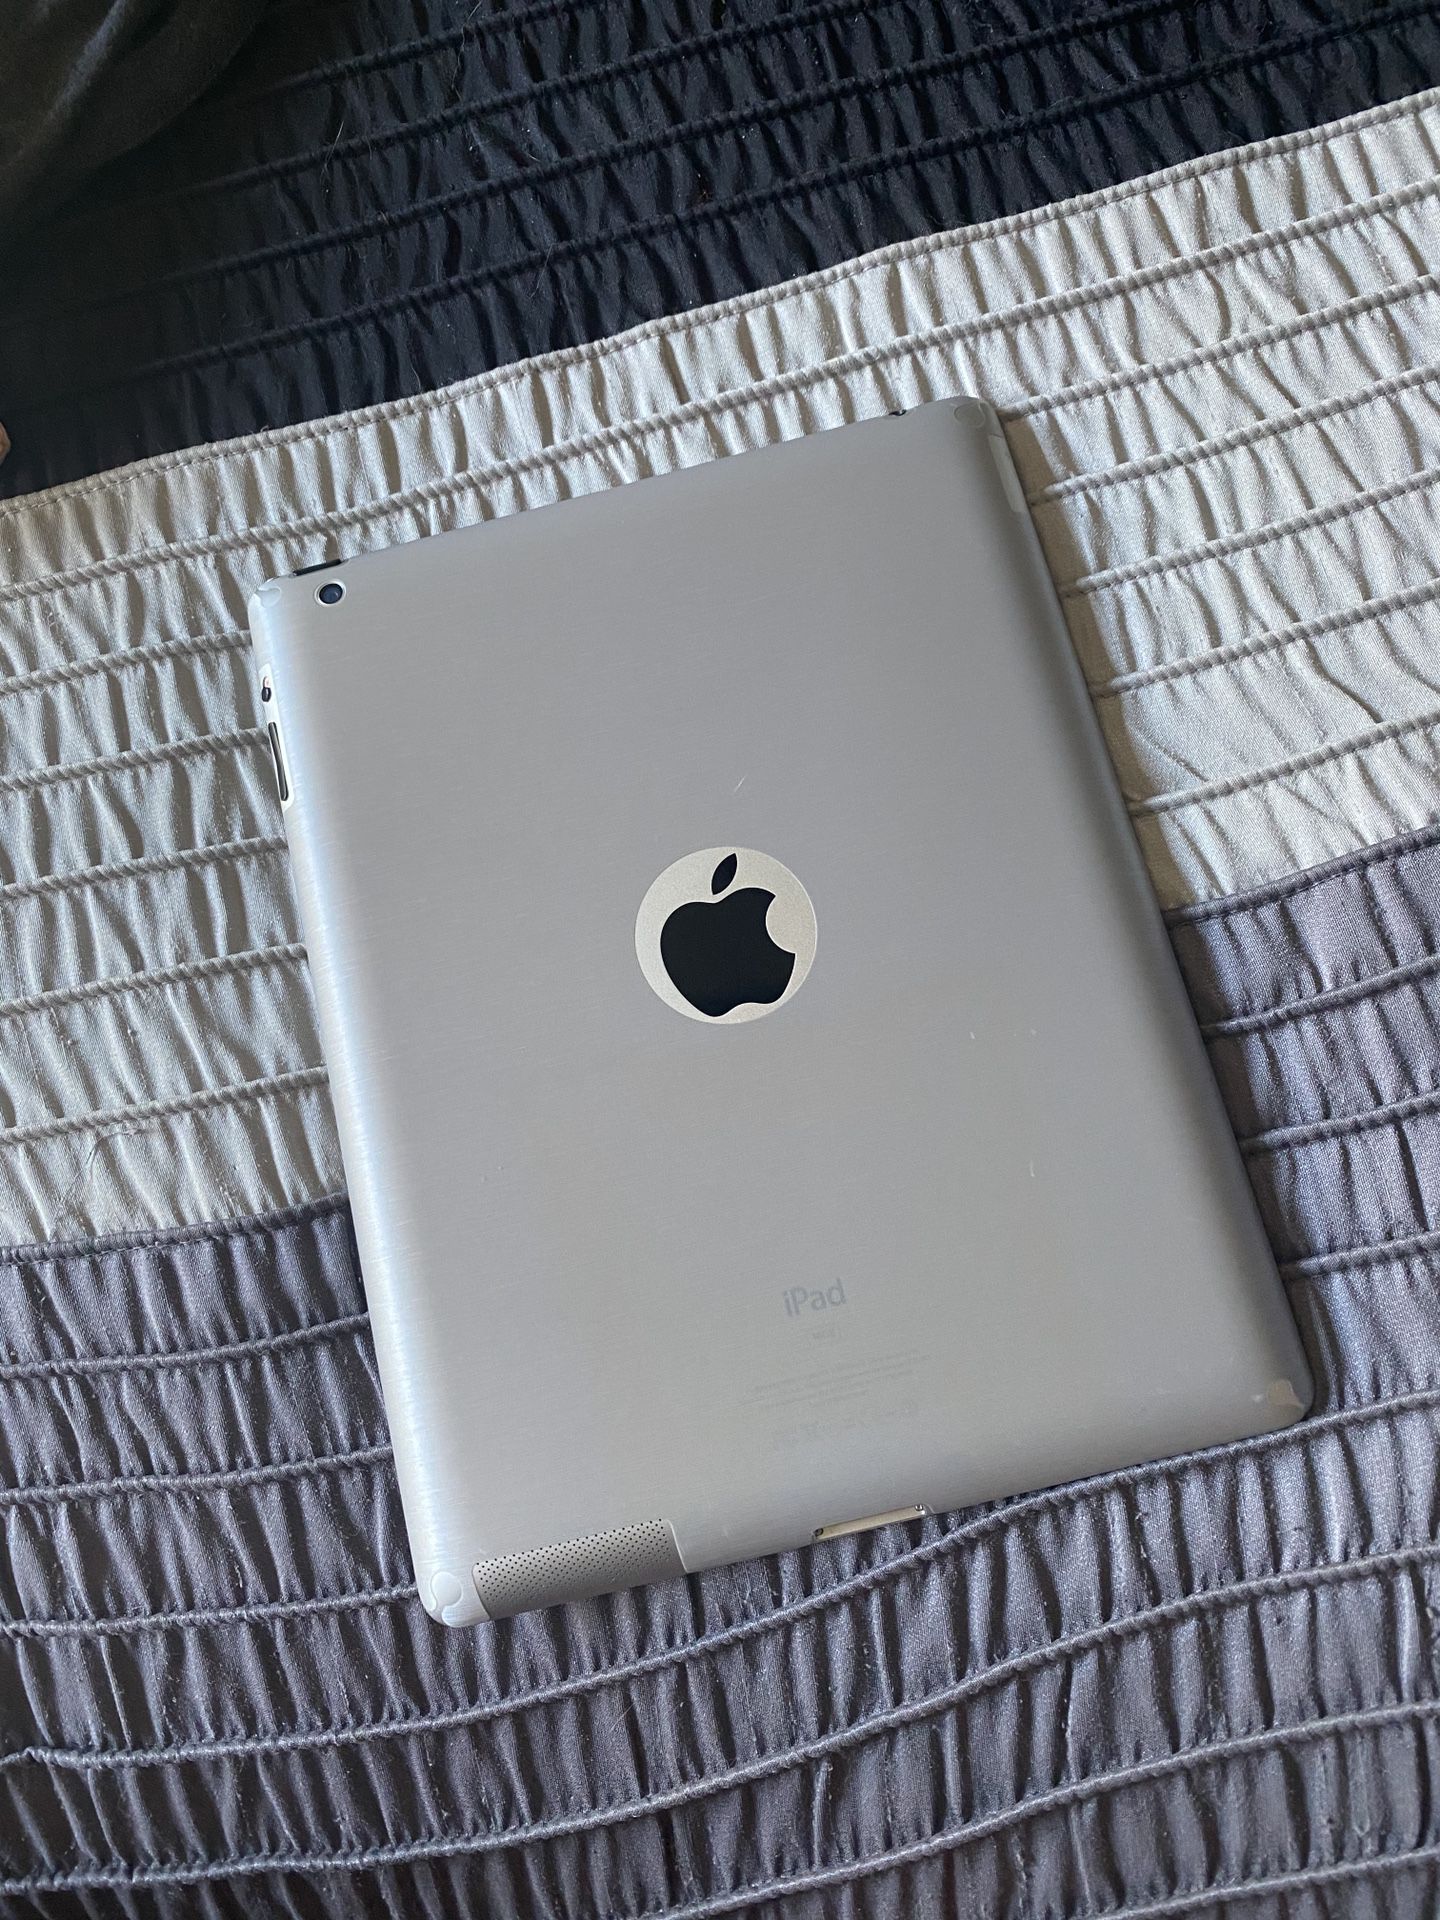 Apple iPad 3 - 16GB - Never Used